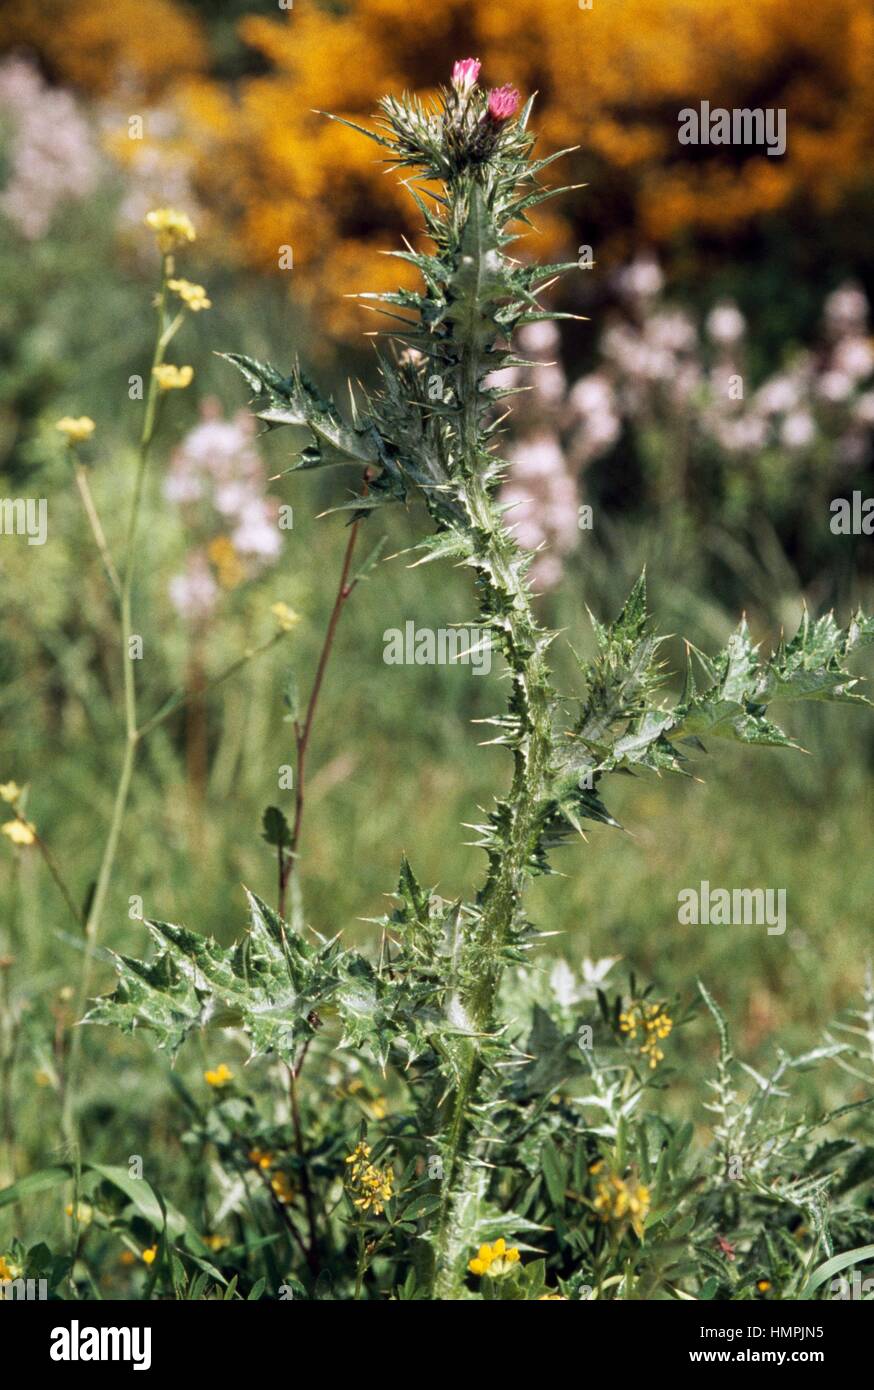 Plumeless Thistle (Carduus acicularis), Asteraceae. Stock Photo